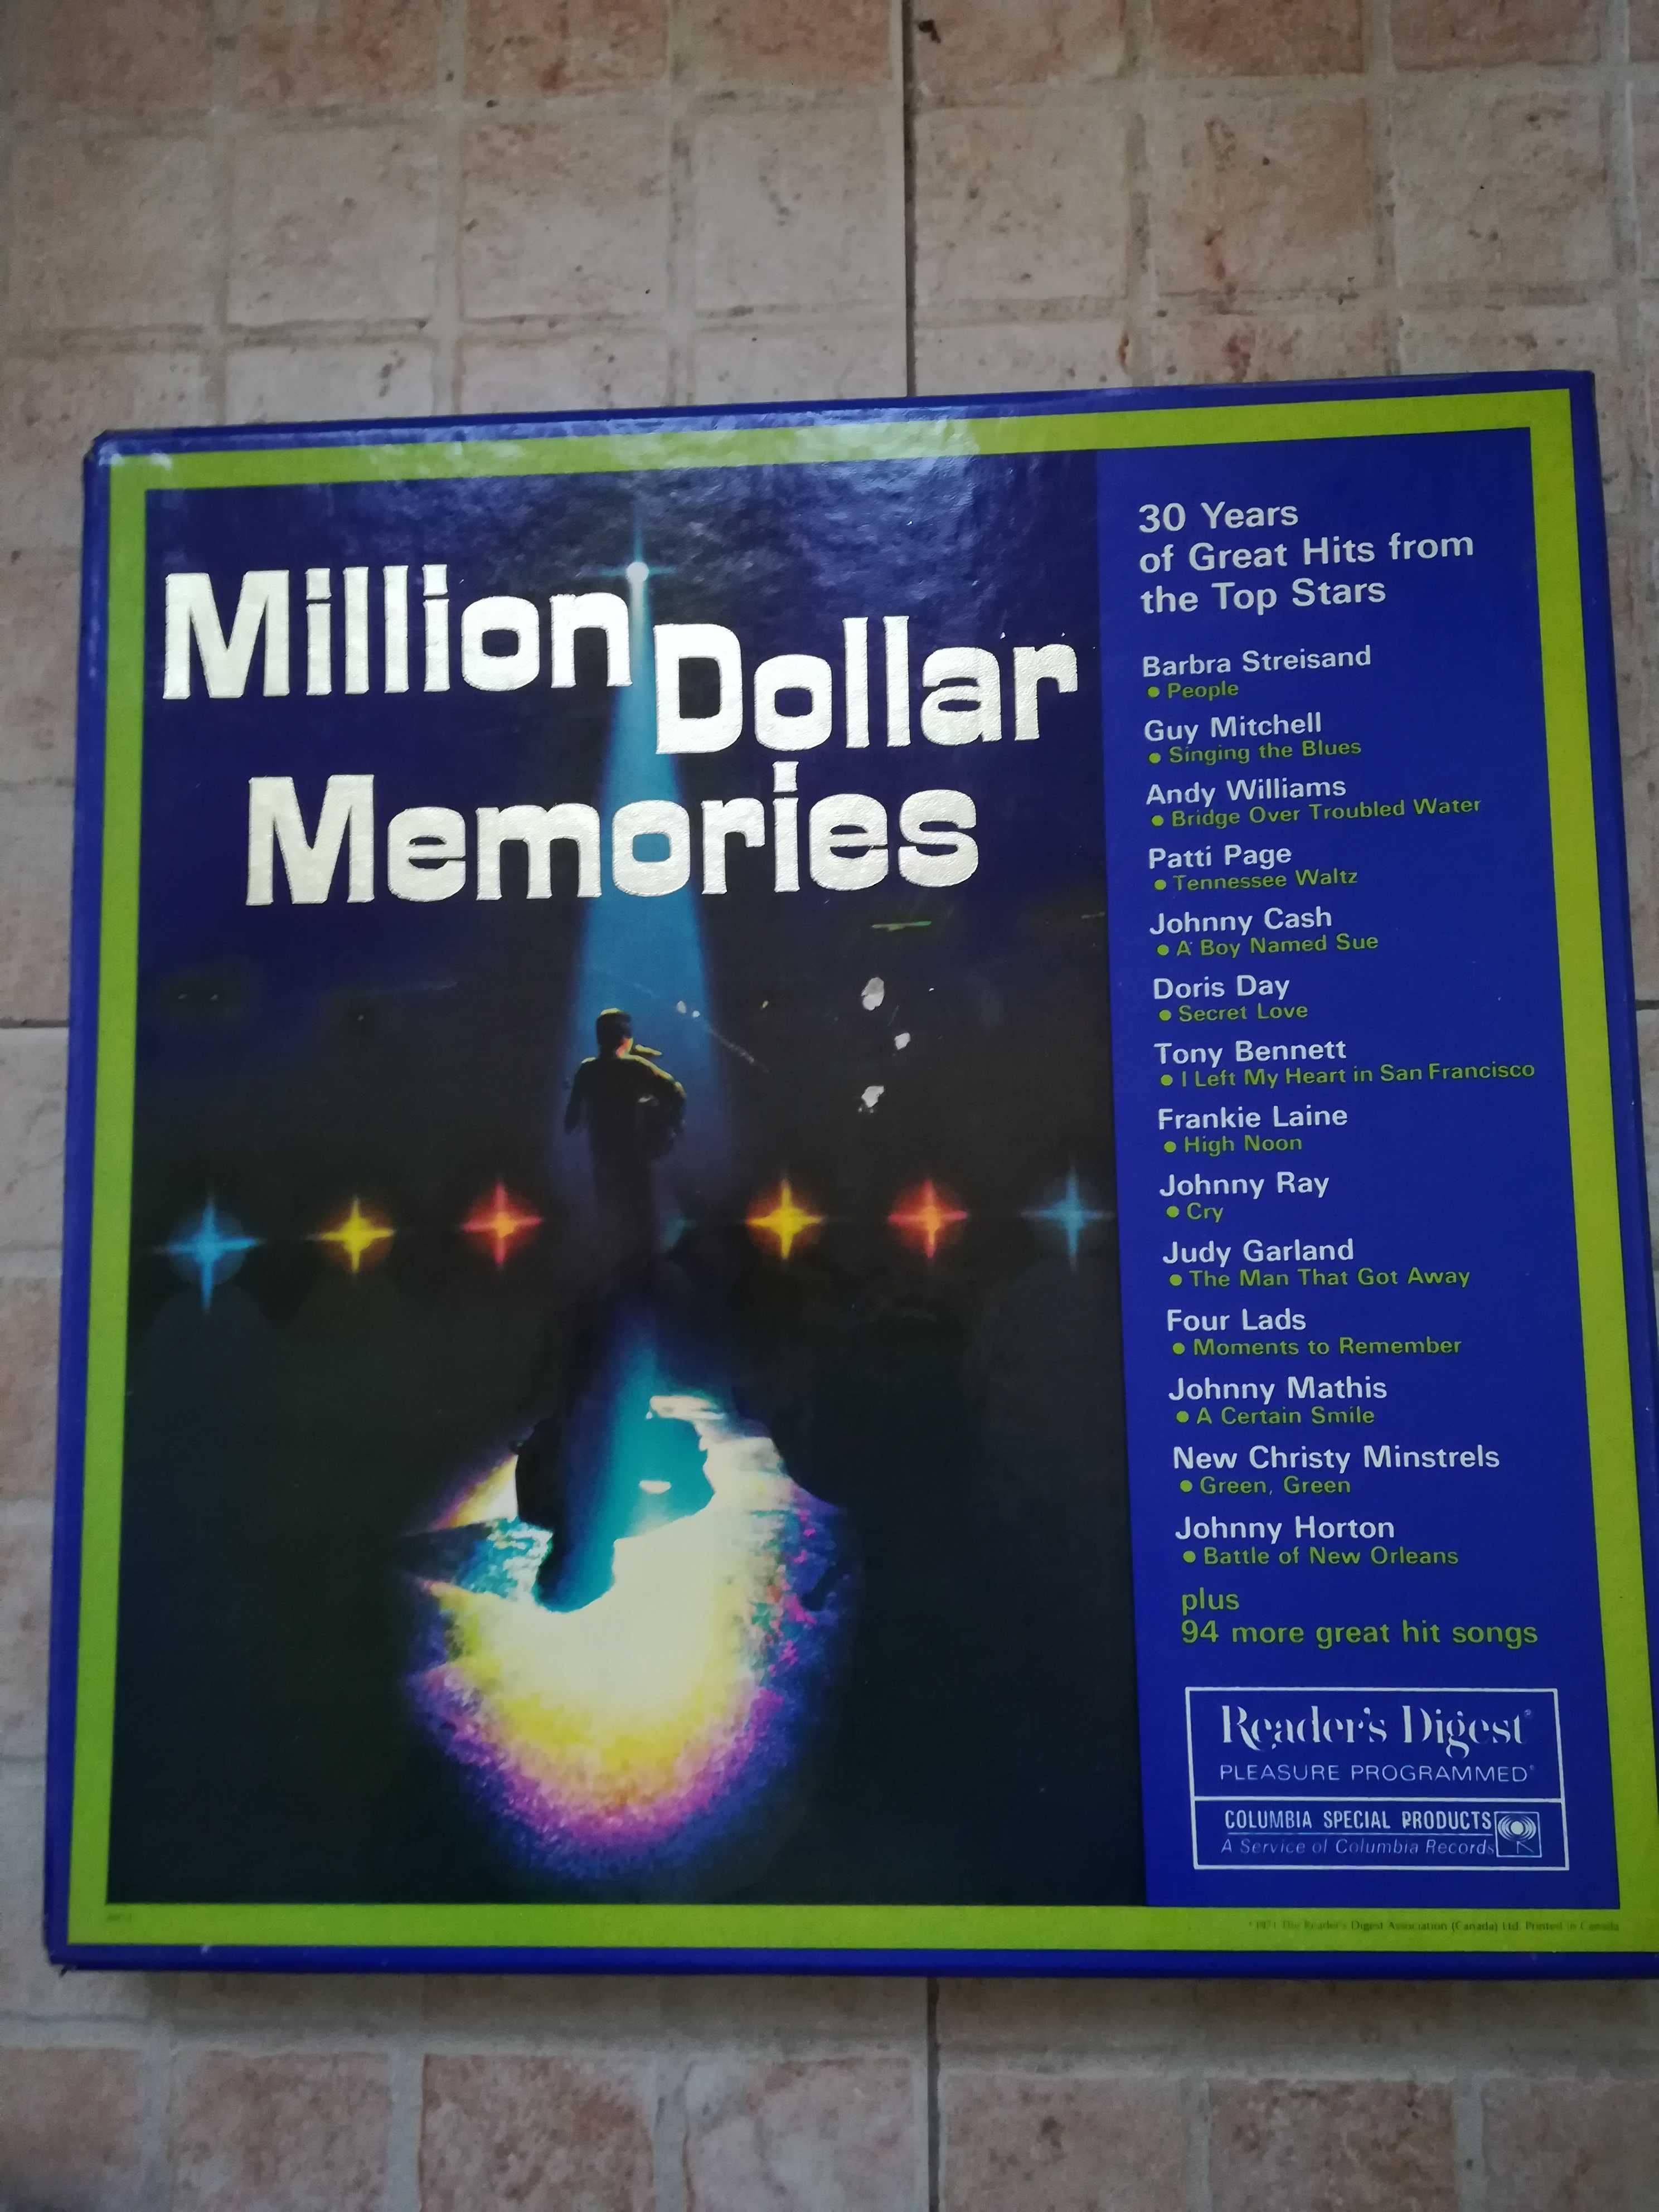 Coleção discos vynil - "Million dollar memories"